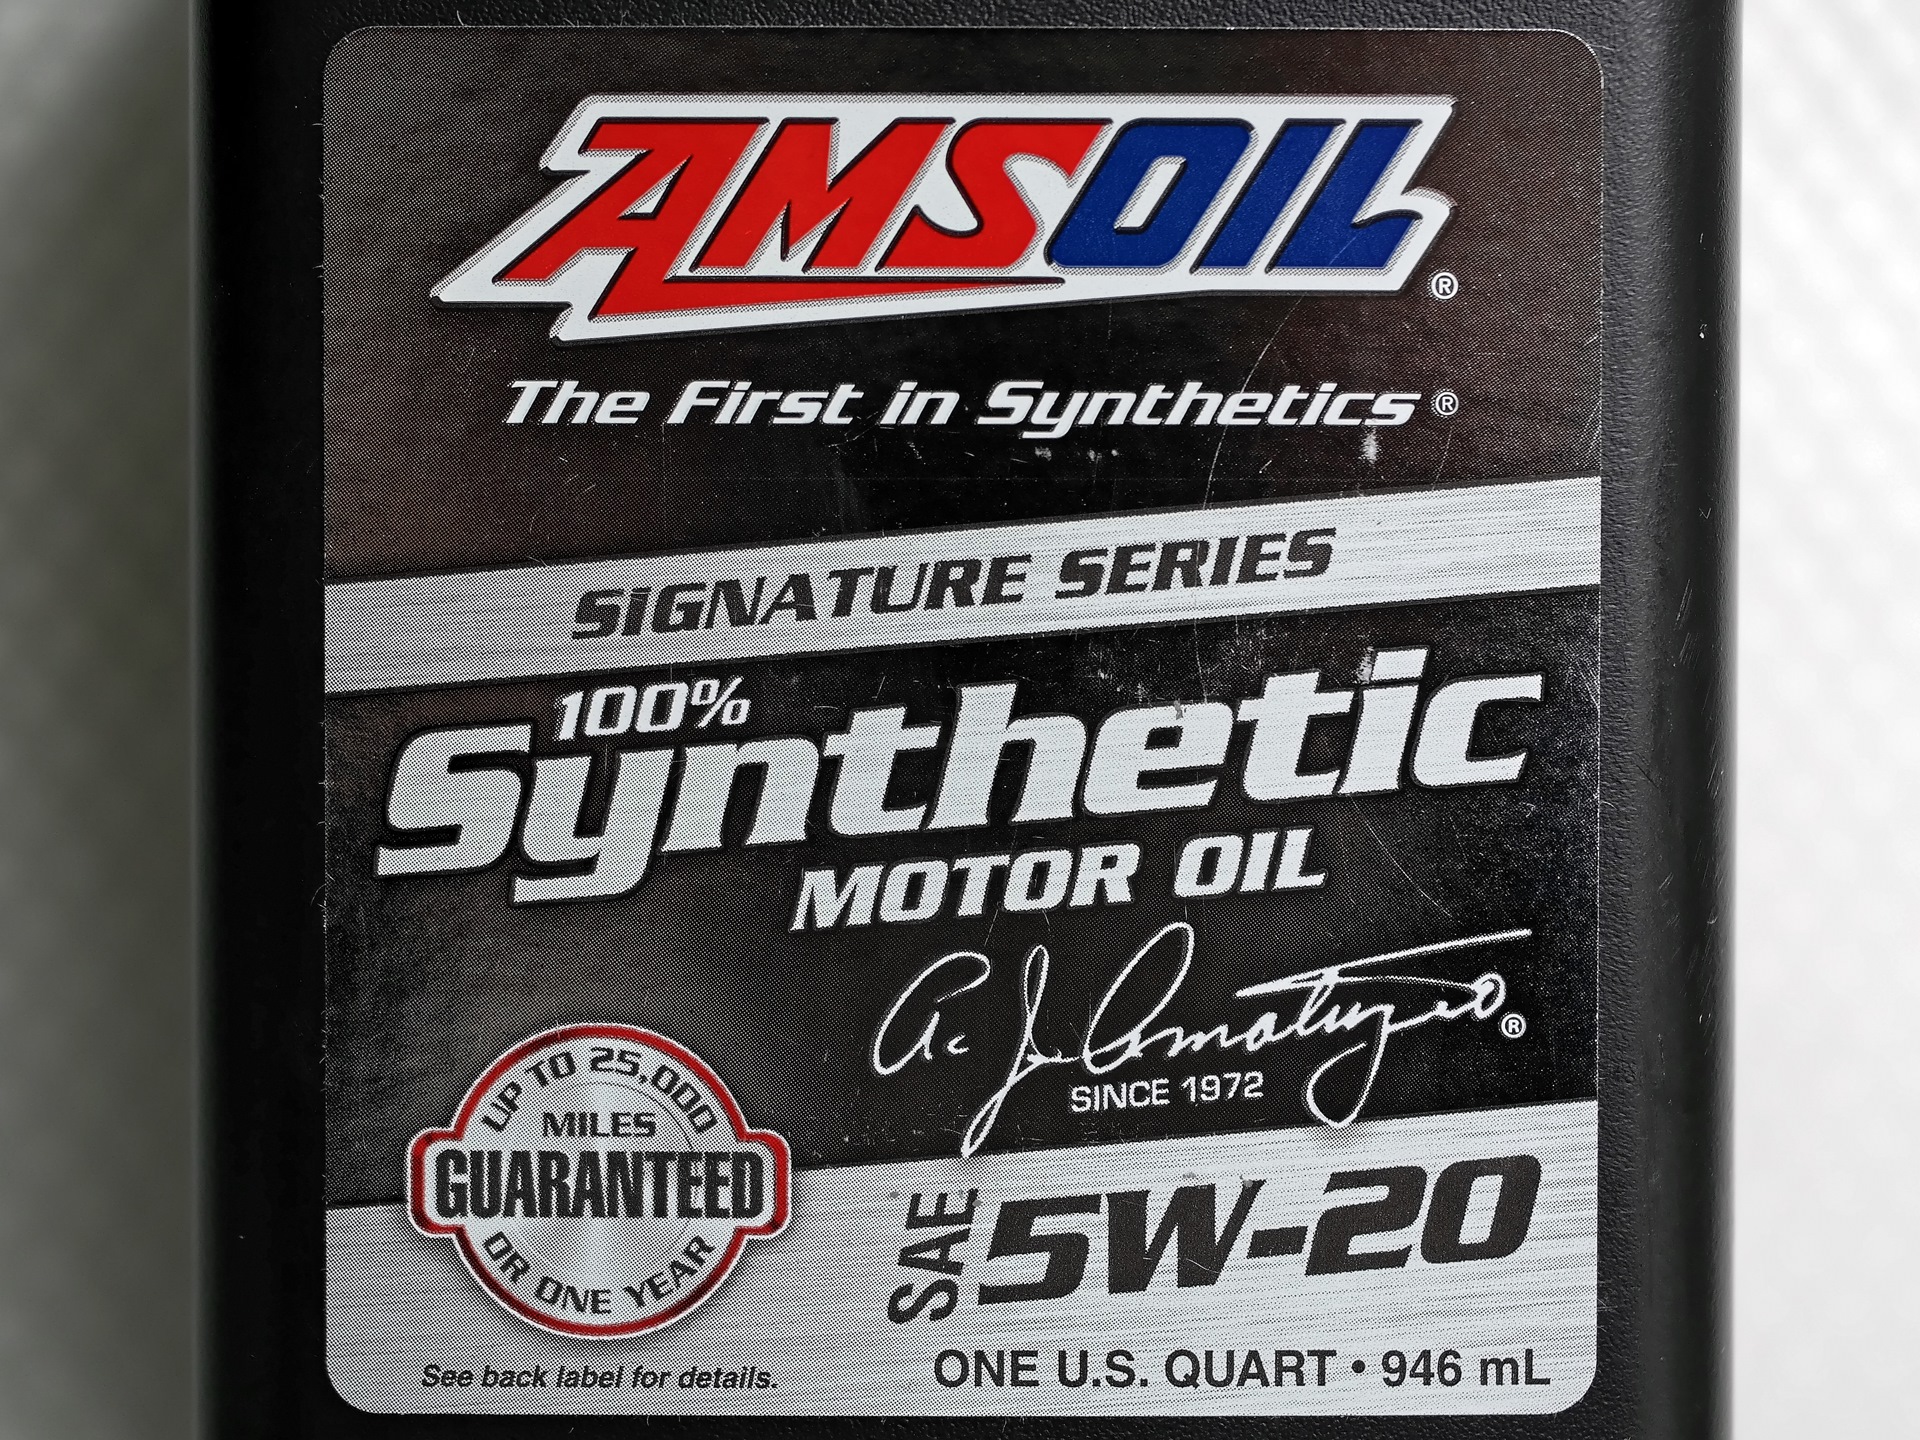 AMSOIL 5w20. AMSOIL 5w20 артикул. Аmsoil Signature Series 100% Synthetic 5w-30. AMSOIL Signature Series Synthetic Motor Oil 5w-30. Amsoil signature series synthetic